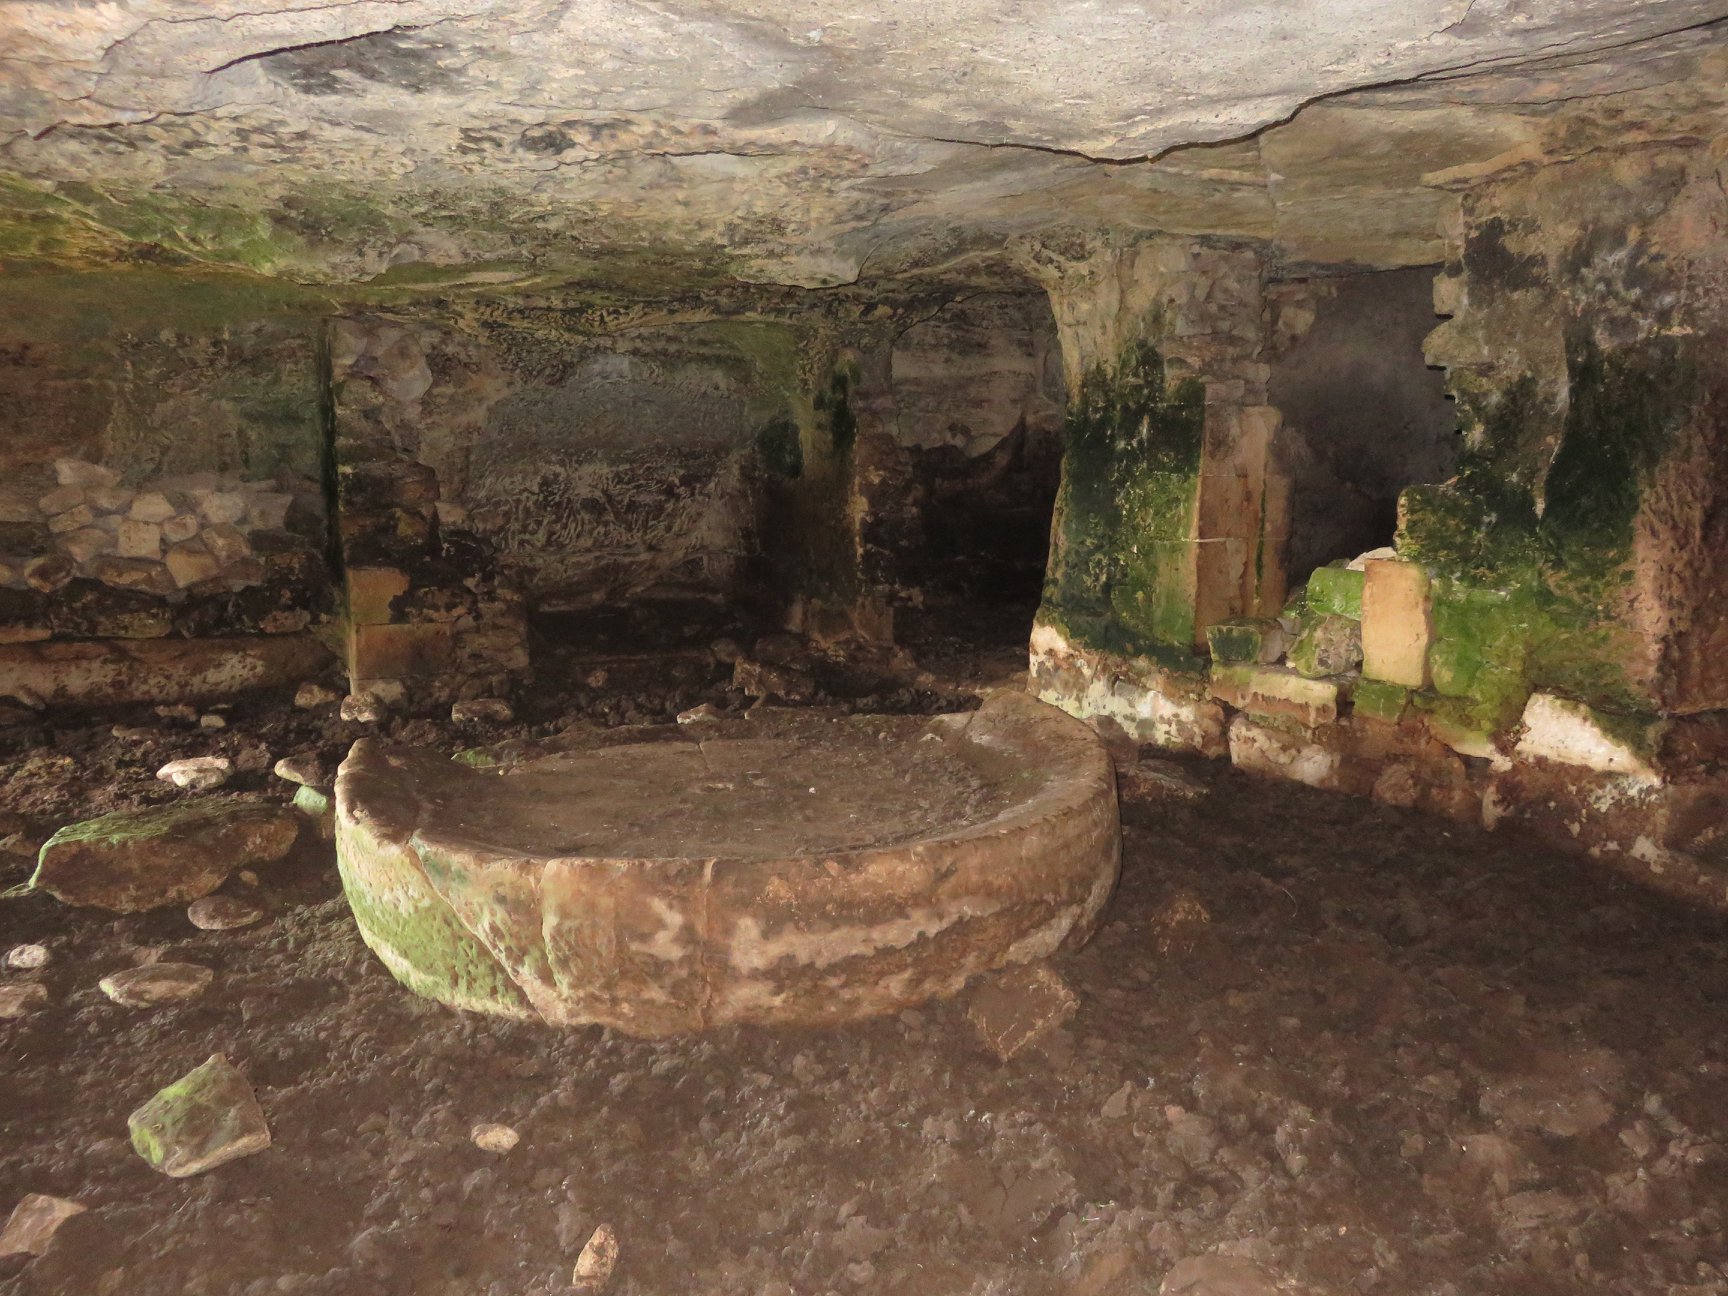 Catacombe cava Palombieri-Numero visite:20239